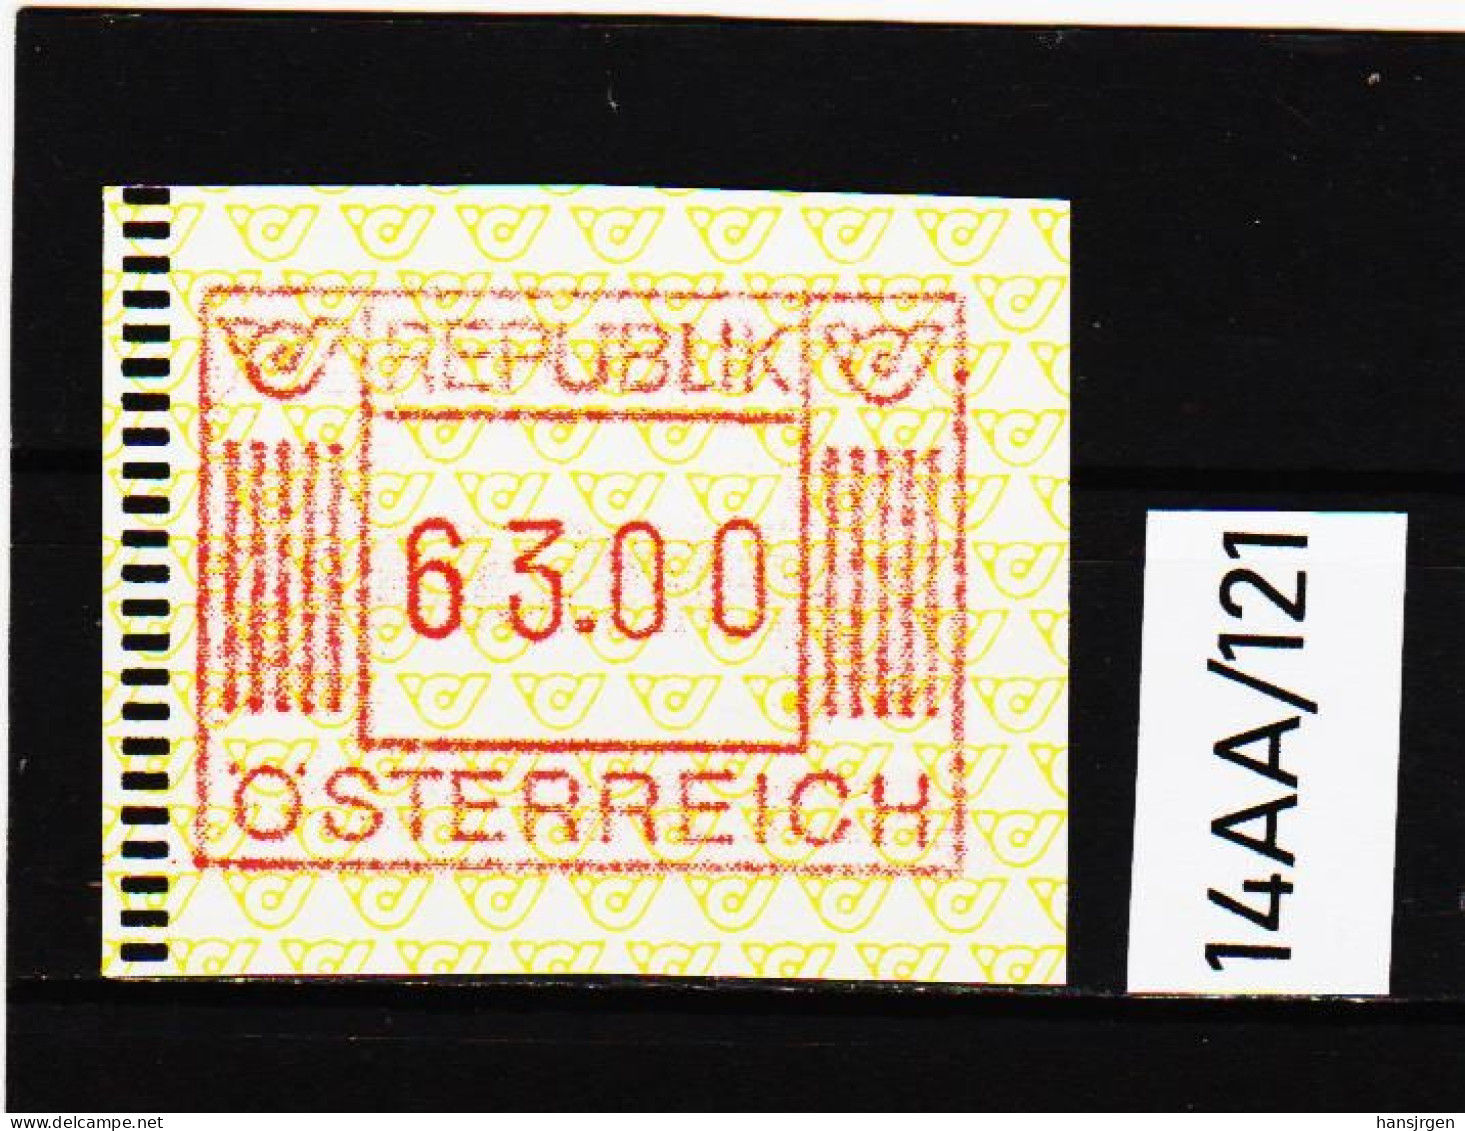 14AA/121  ÖSTERREICH 1983 AUTOMATENMARKEN  A N K  1. AUSGABE  63,00 SCHILLING   ** Postfrisch - Machine Labels [ATM]